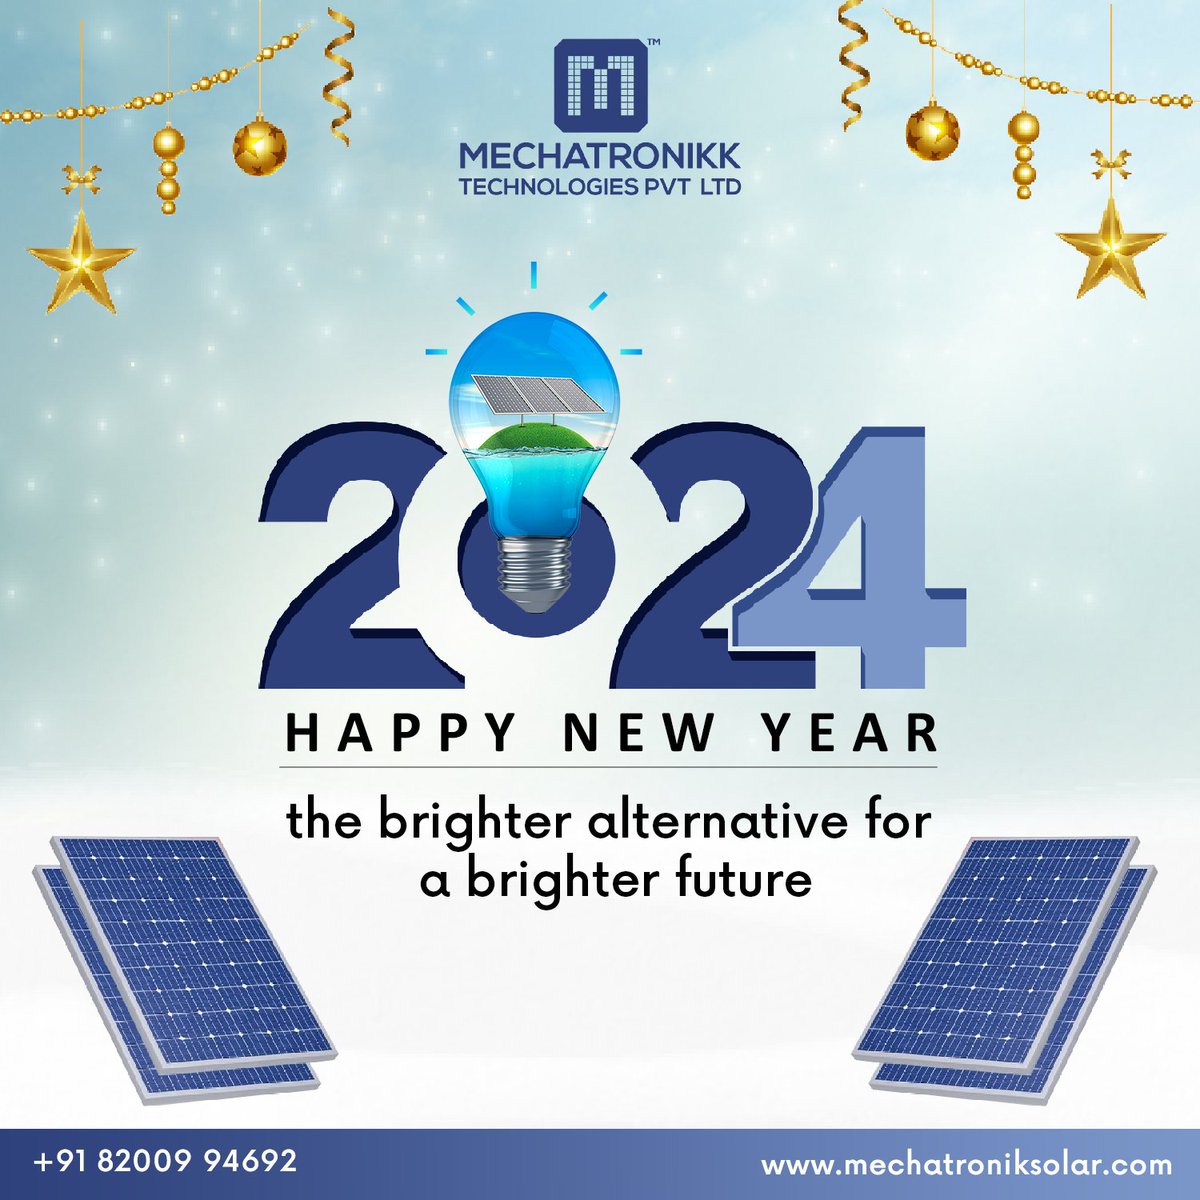 The brighter alternative for a brighter future.
Happy New Year!
.
.
#Happynewyear #NewYearNewYou #HealthAndWellness #NewYear2024 #BestSolarCompany #SolarPanels #mechatroniksolar #Ahmedabad #Gujarat